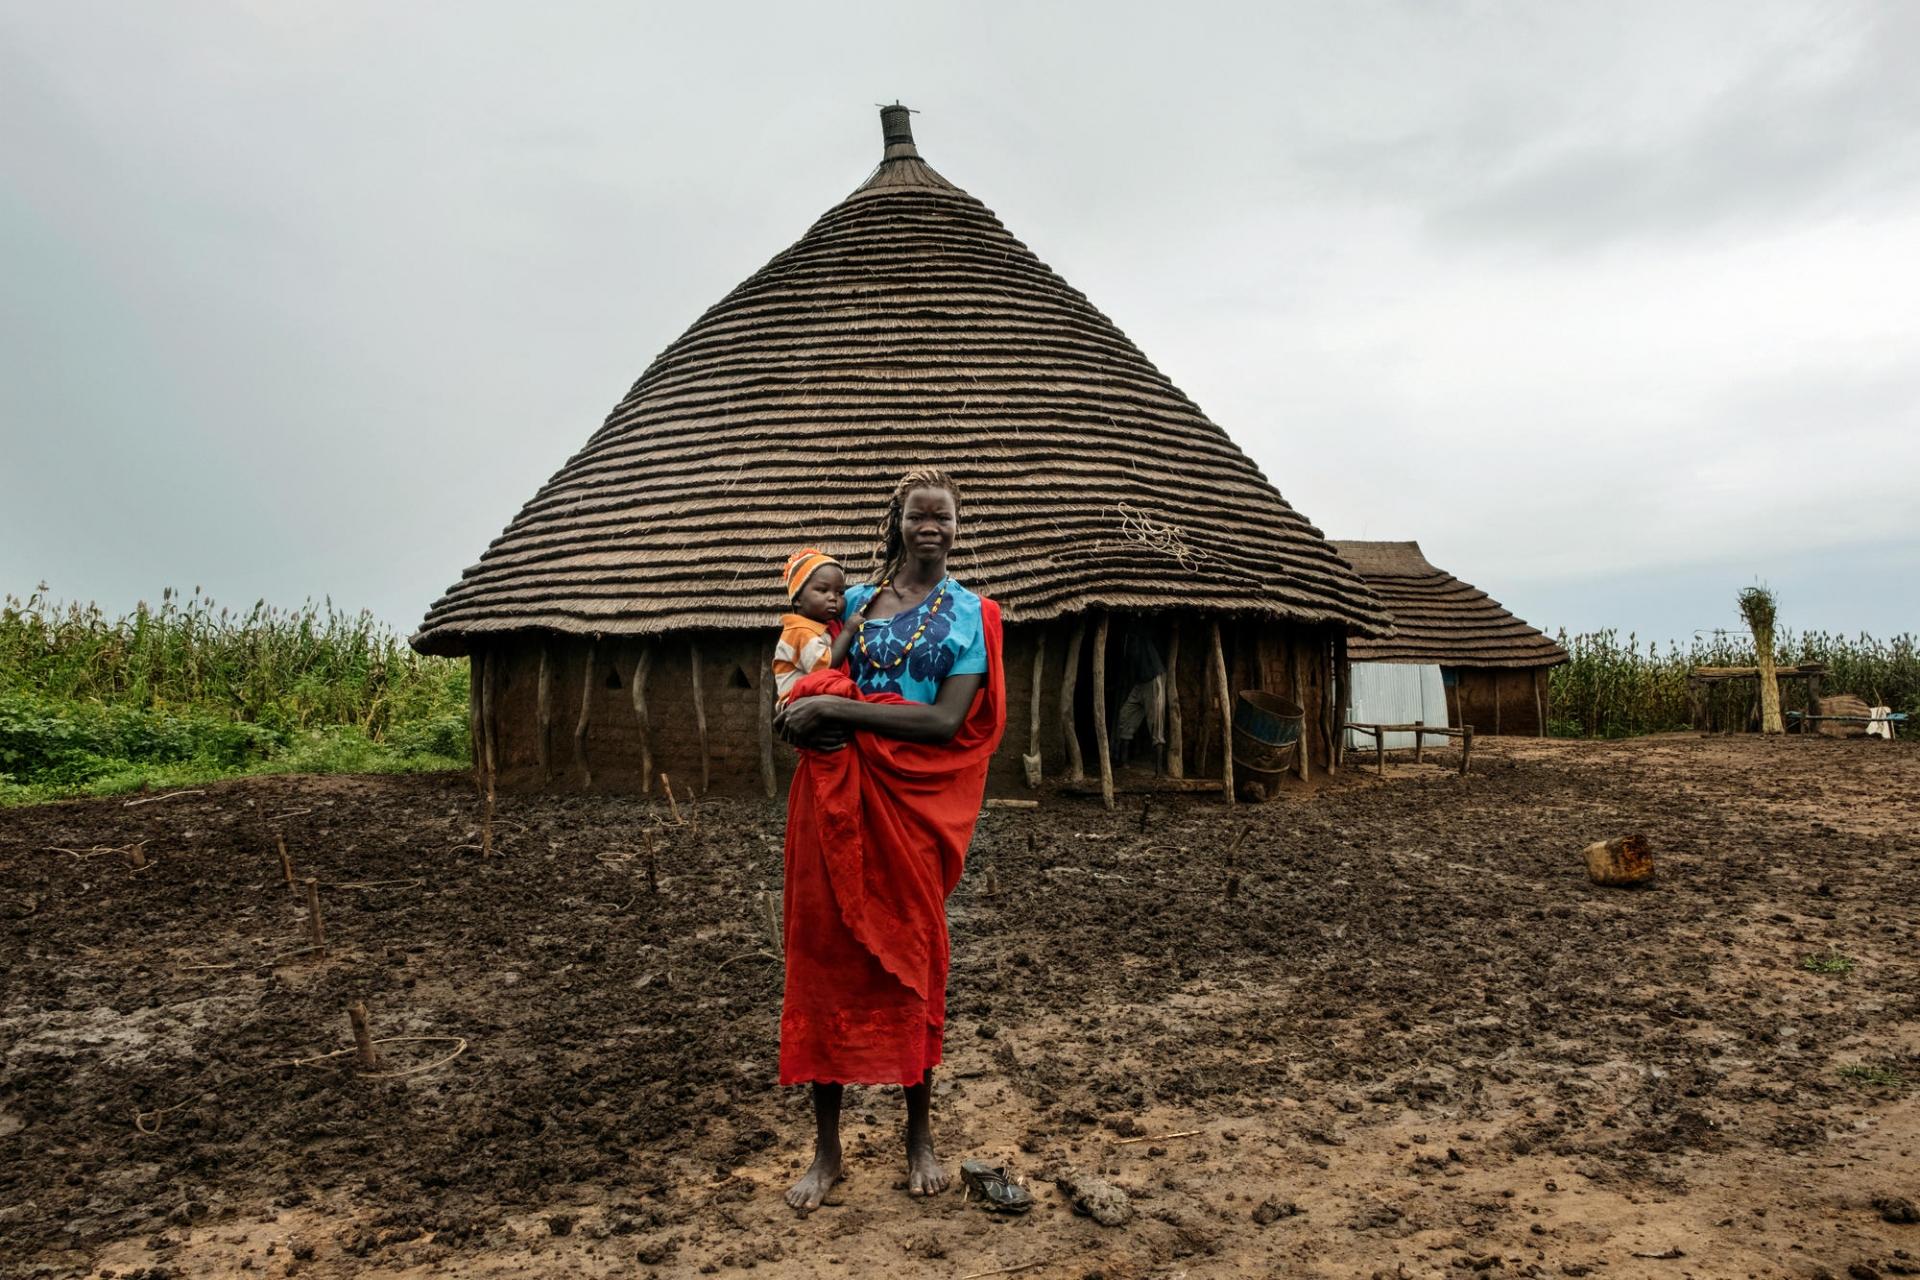 Anger et son fils devant un tukul, une habitation traditionnelle de cette région du Soudan du Sud.